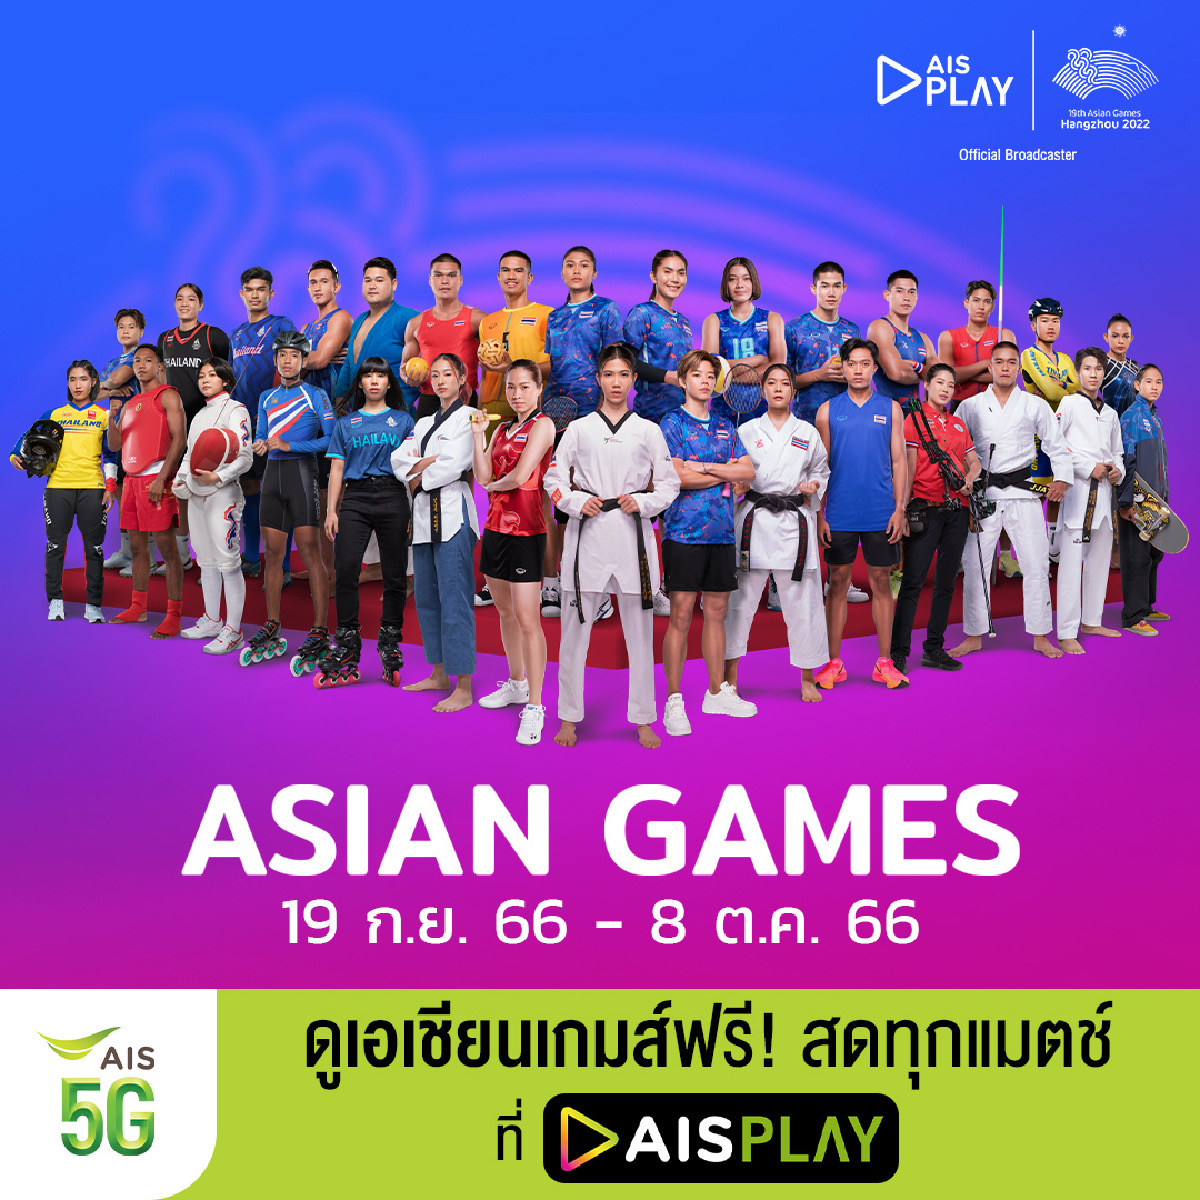 AIS PLAY ชวนลูกค้าและคนไทยส่งใจเชียร์เอเชียนเกมส์ครั้งที่ 19 หางโจว 2022 นัดแรกยิงสดจากหางโจว 19 กันยา